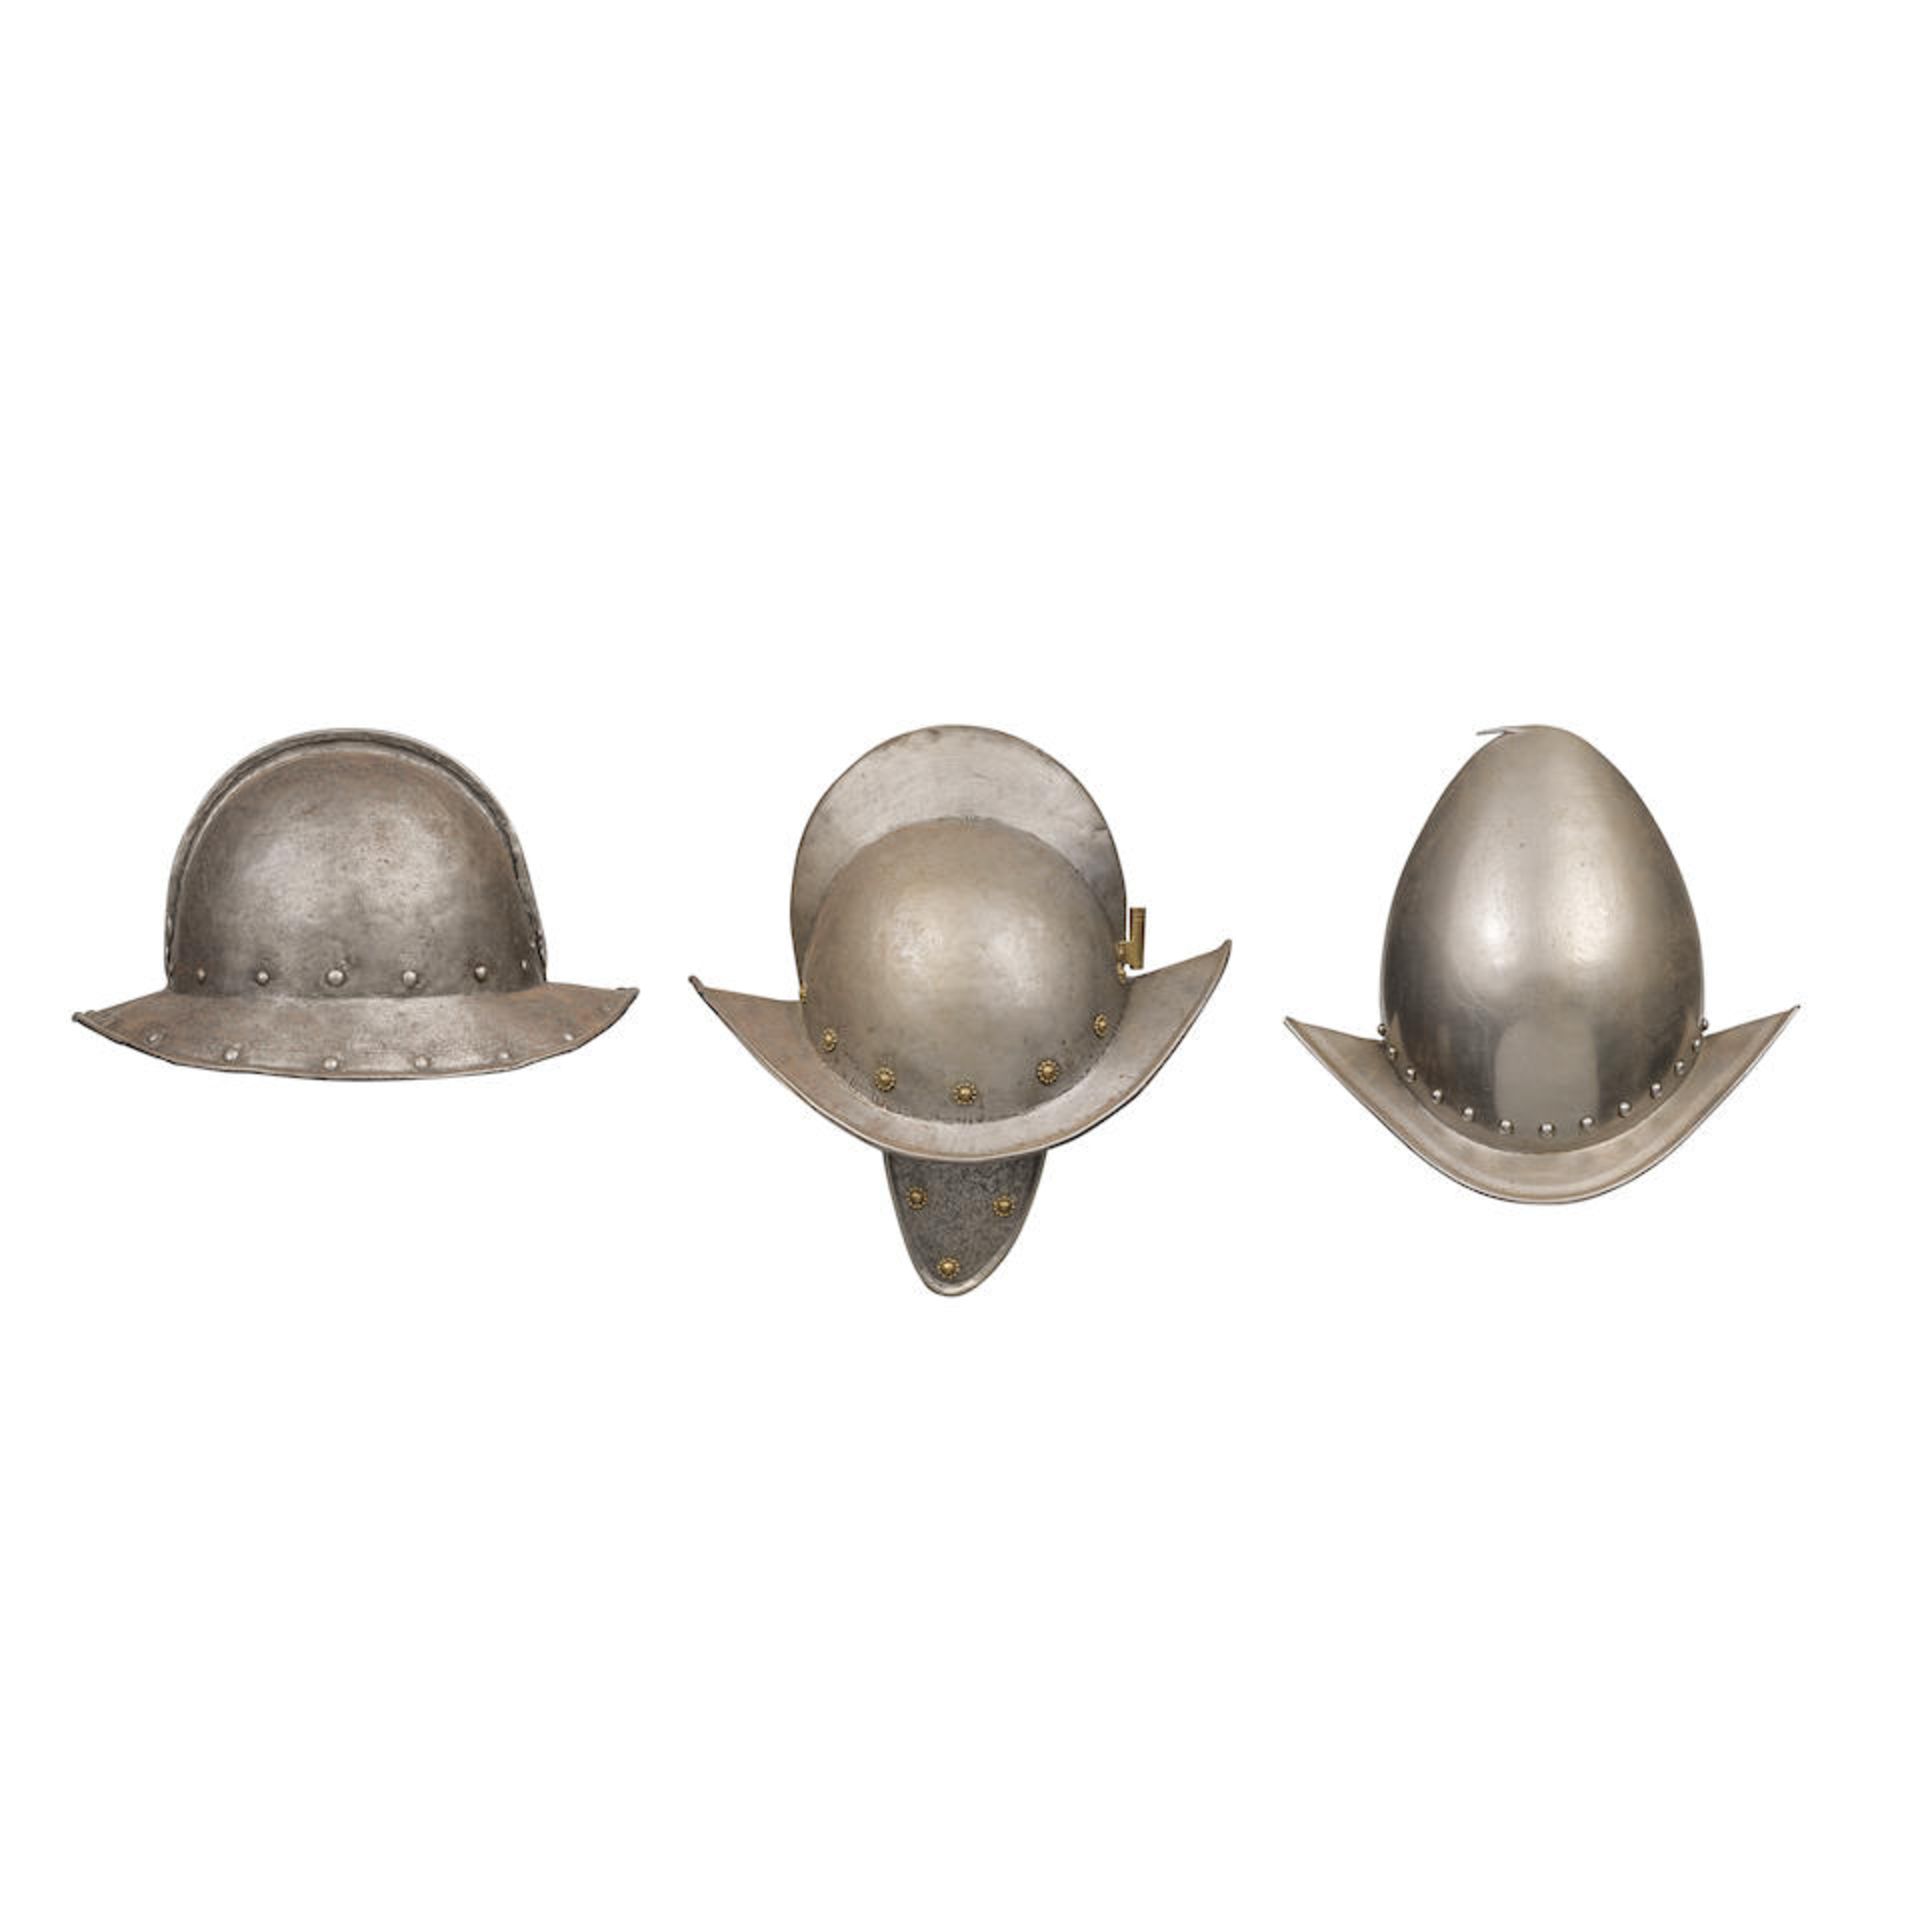 An English Civil War Period Pikeman's Pot Helmet